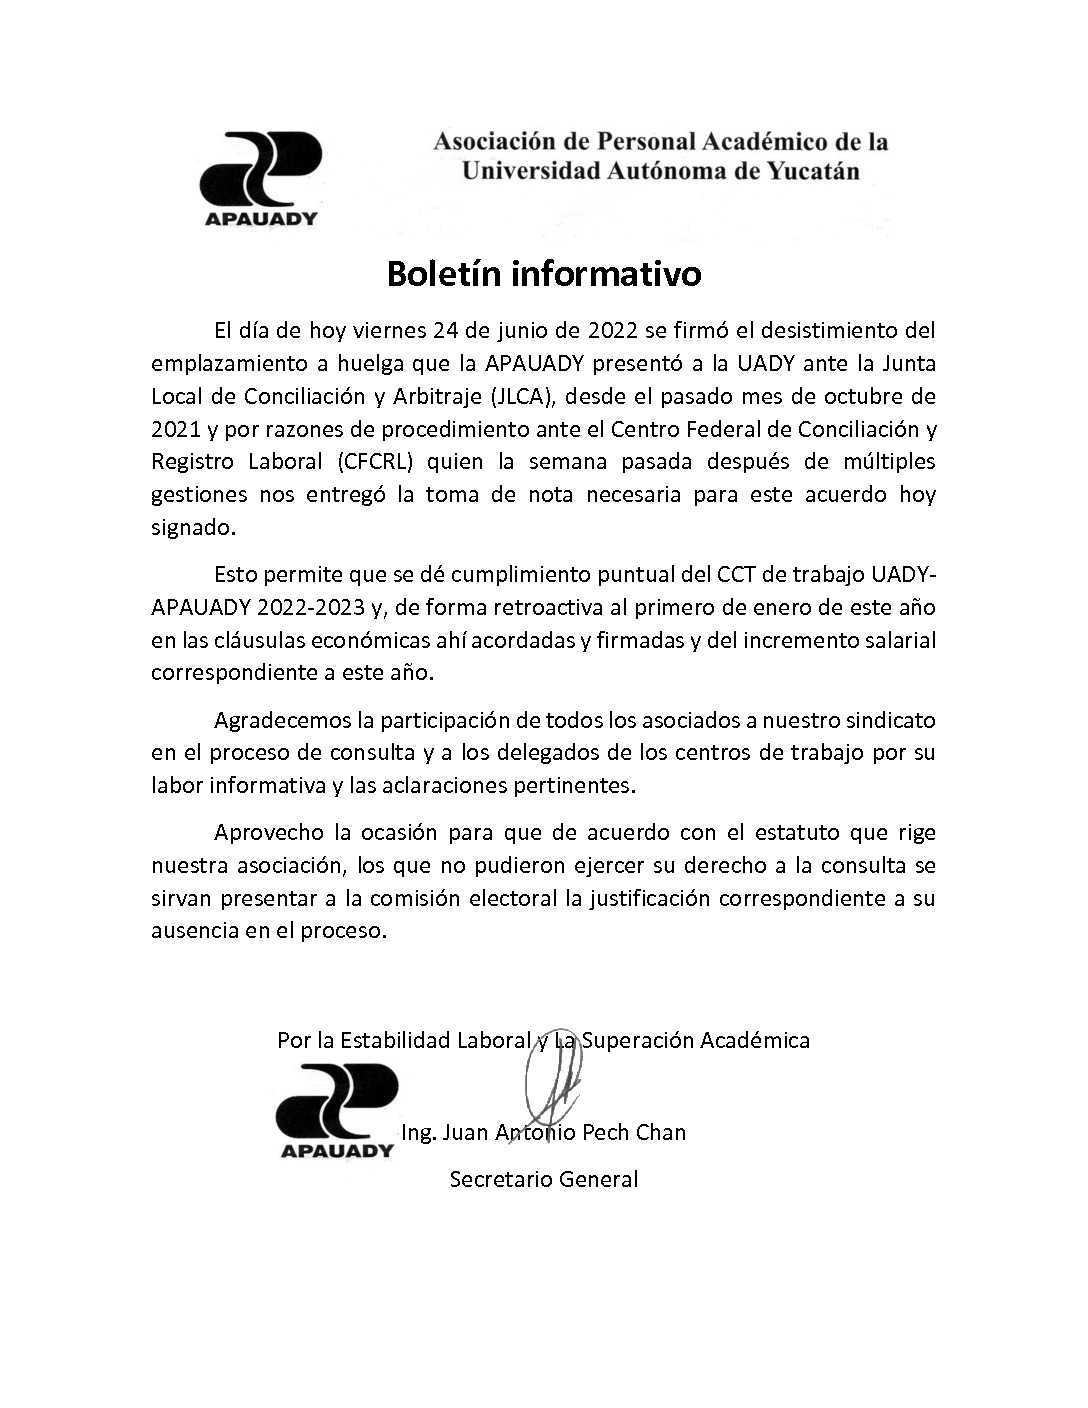 Featured image for “Boletín informativo: Desistimiento del emplazamiento a huelga”